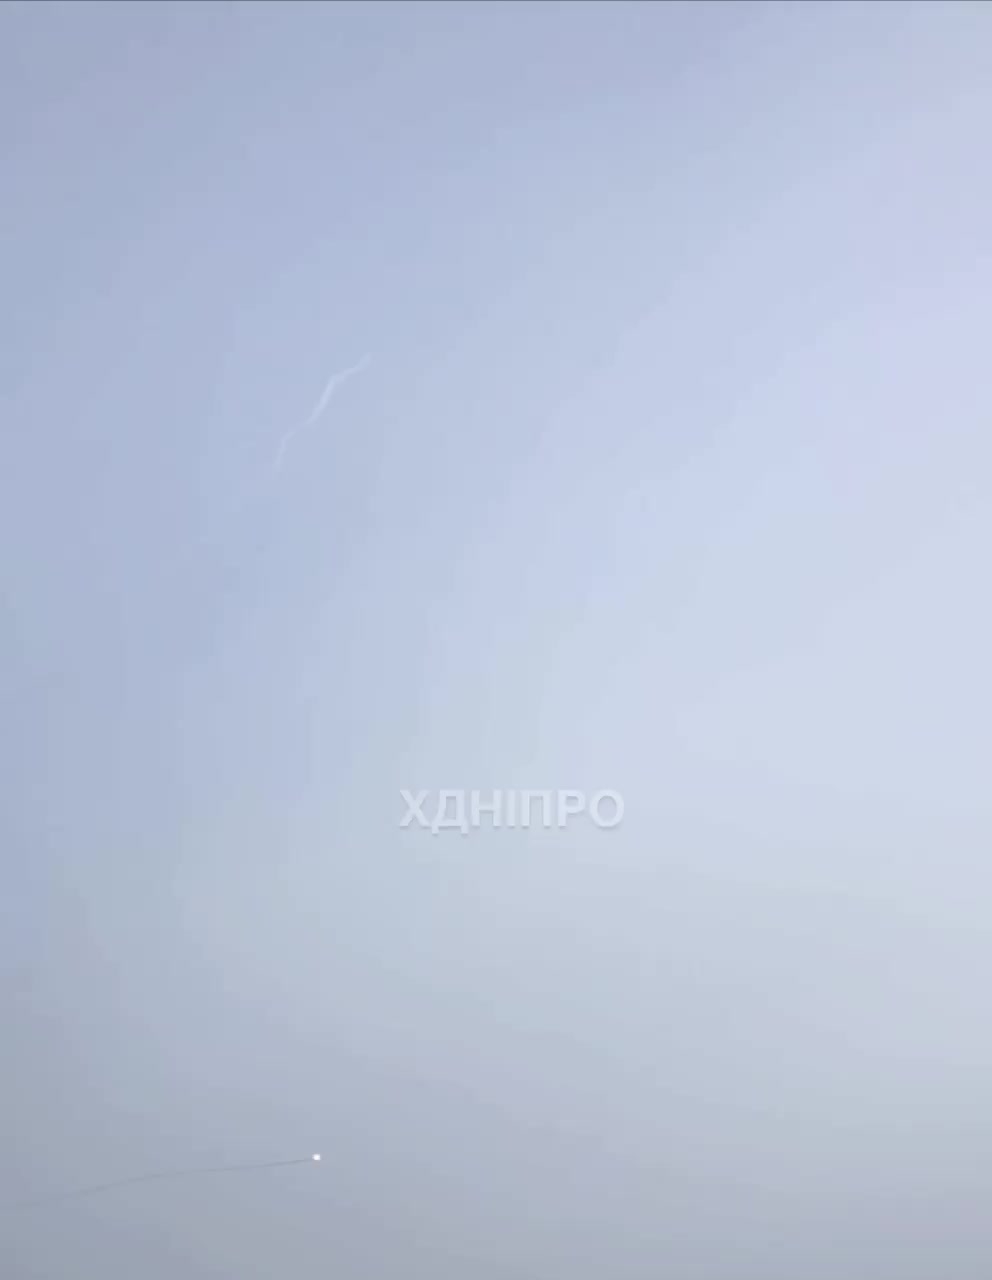 La défense aérienne a abattu un missile au-dessus de la ville de Dnipro